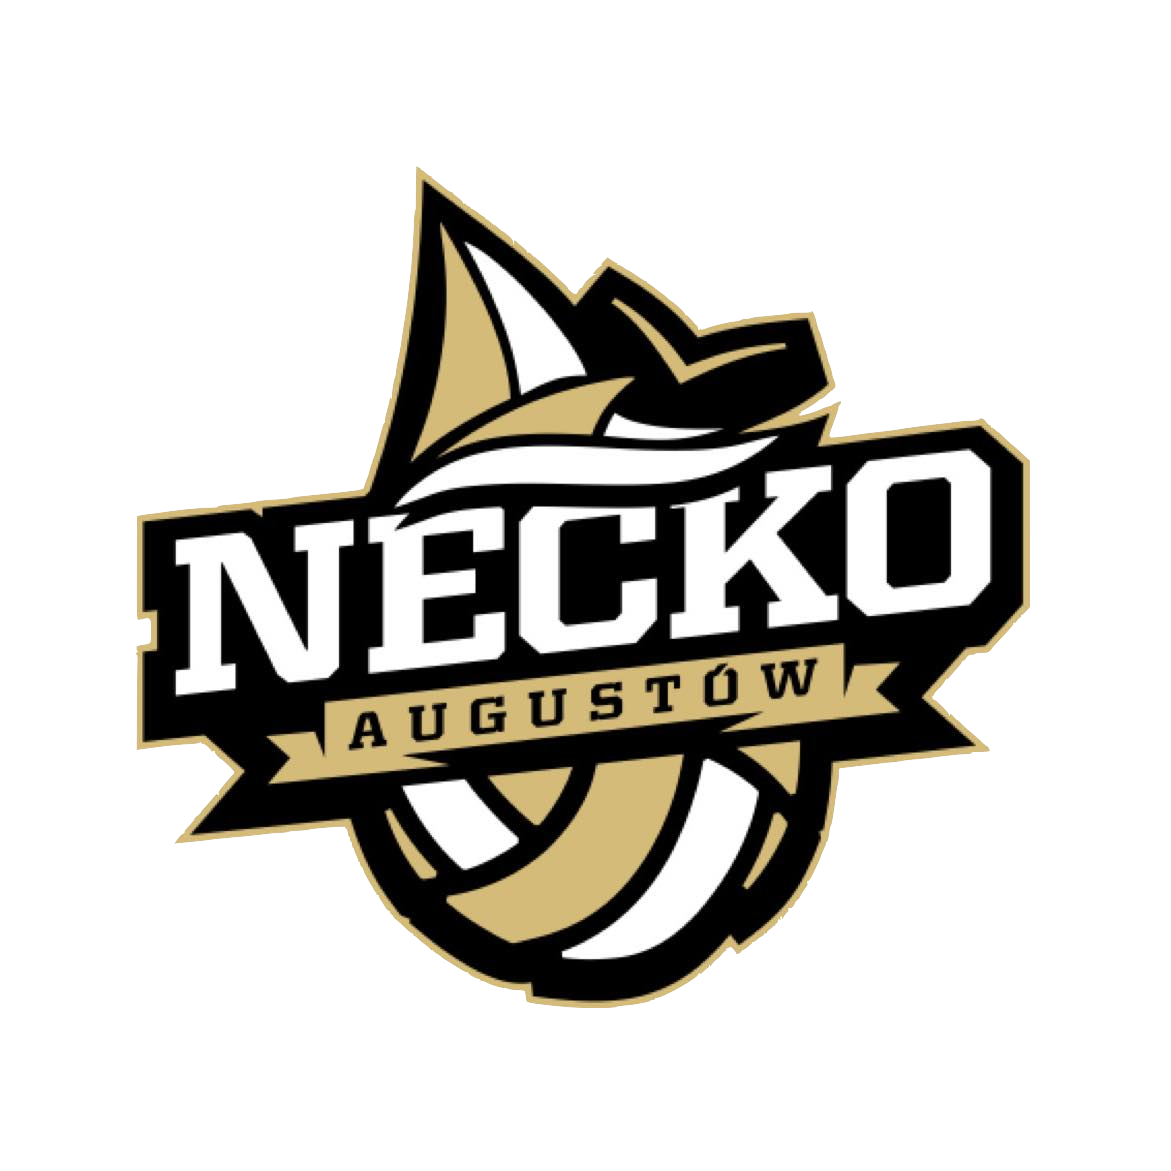 NECKO Augustów Logo